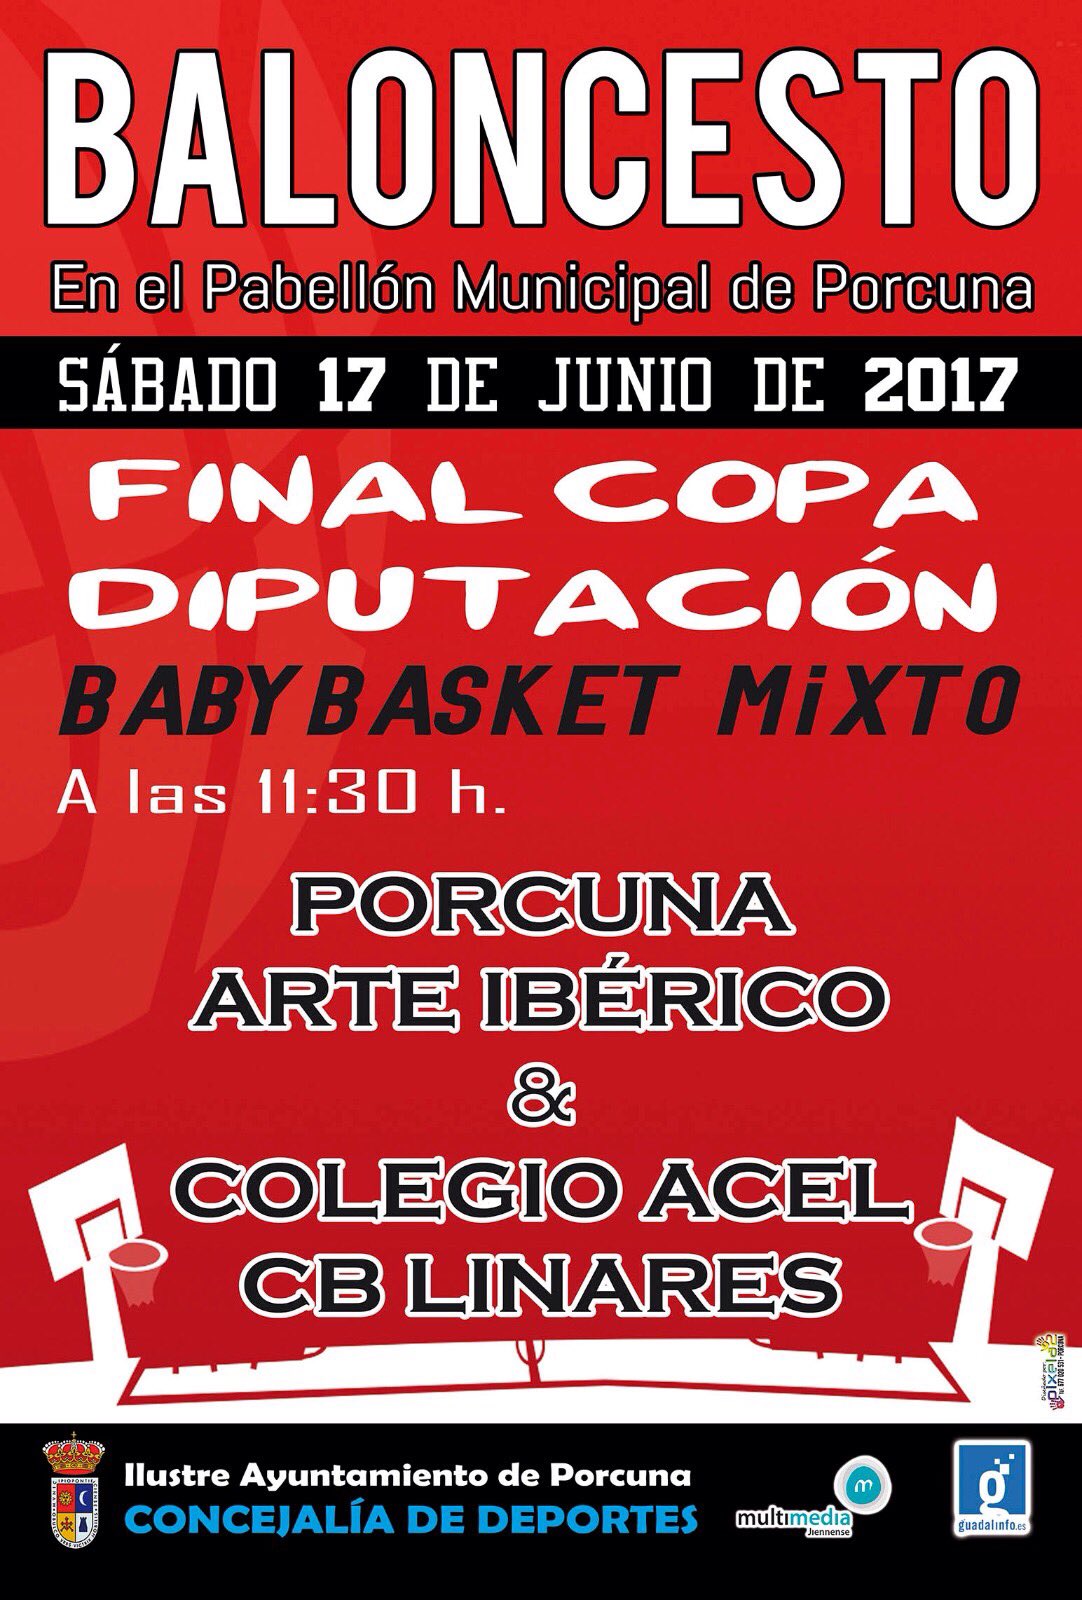 Baloncesto:  Final Copa Diputación  (BabyBasket Mixto)